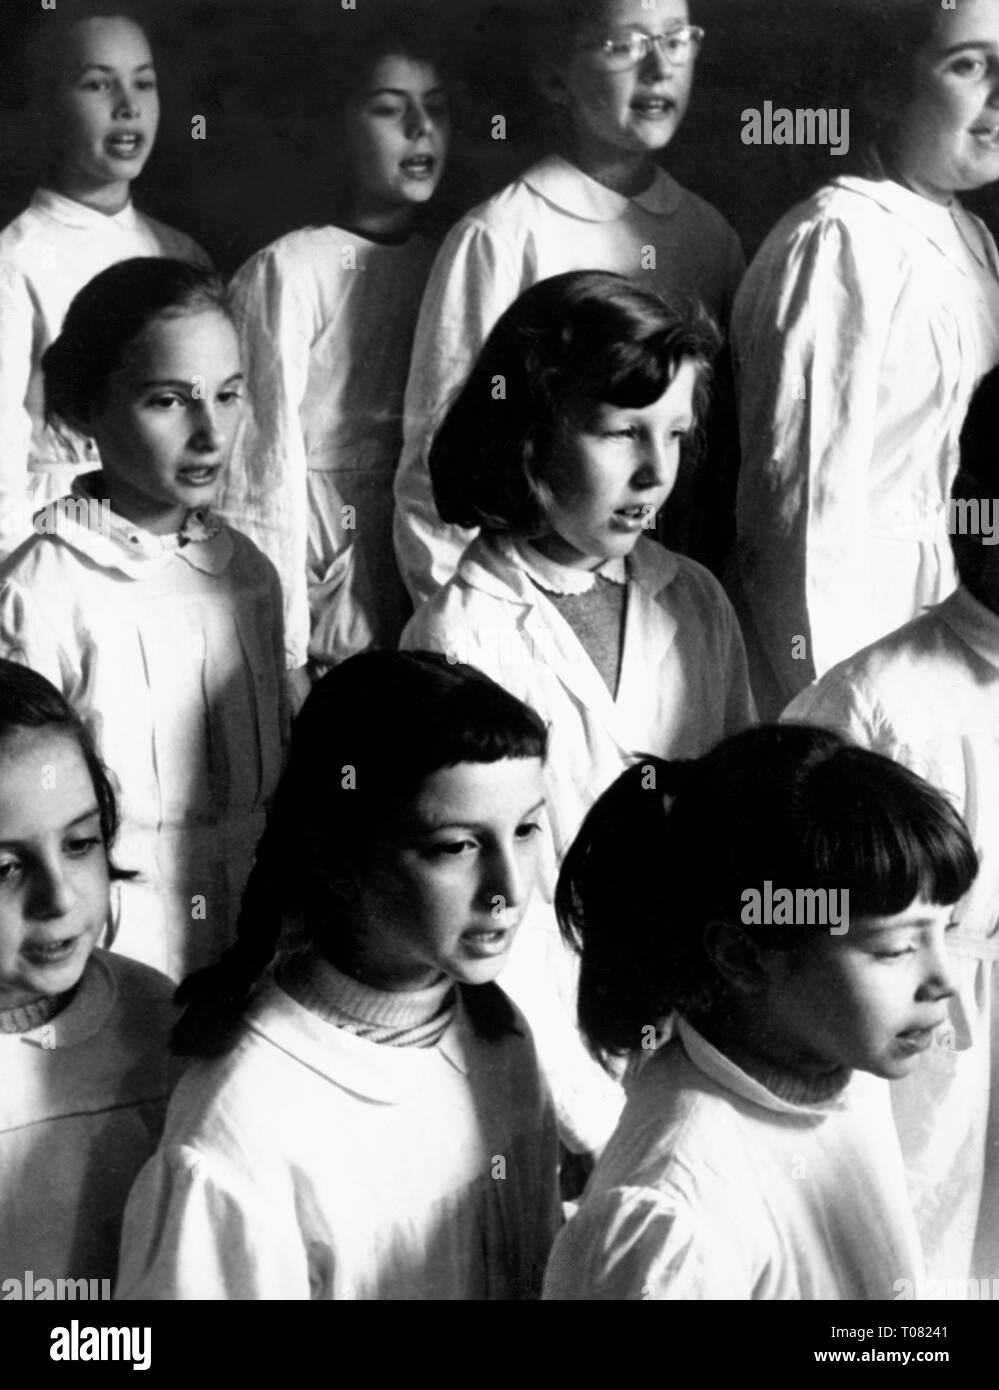 La Suisse, canton du Tessin, l'école primaire, leçon de chant, mars 1962 Banque D'Images